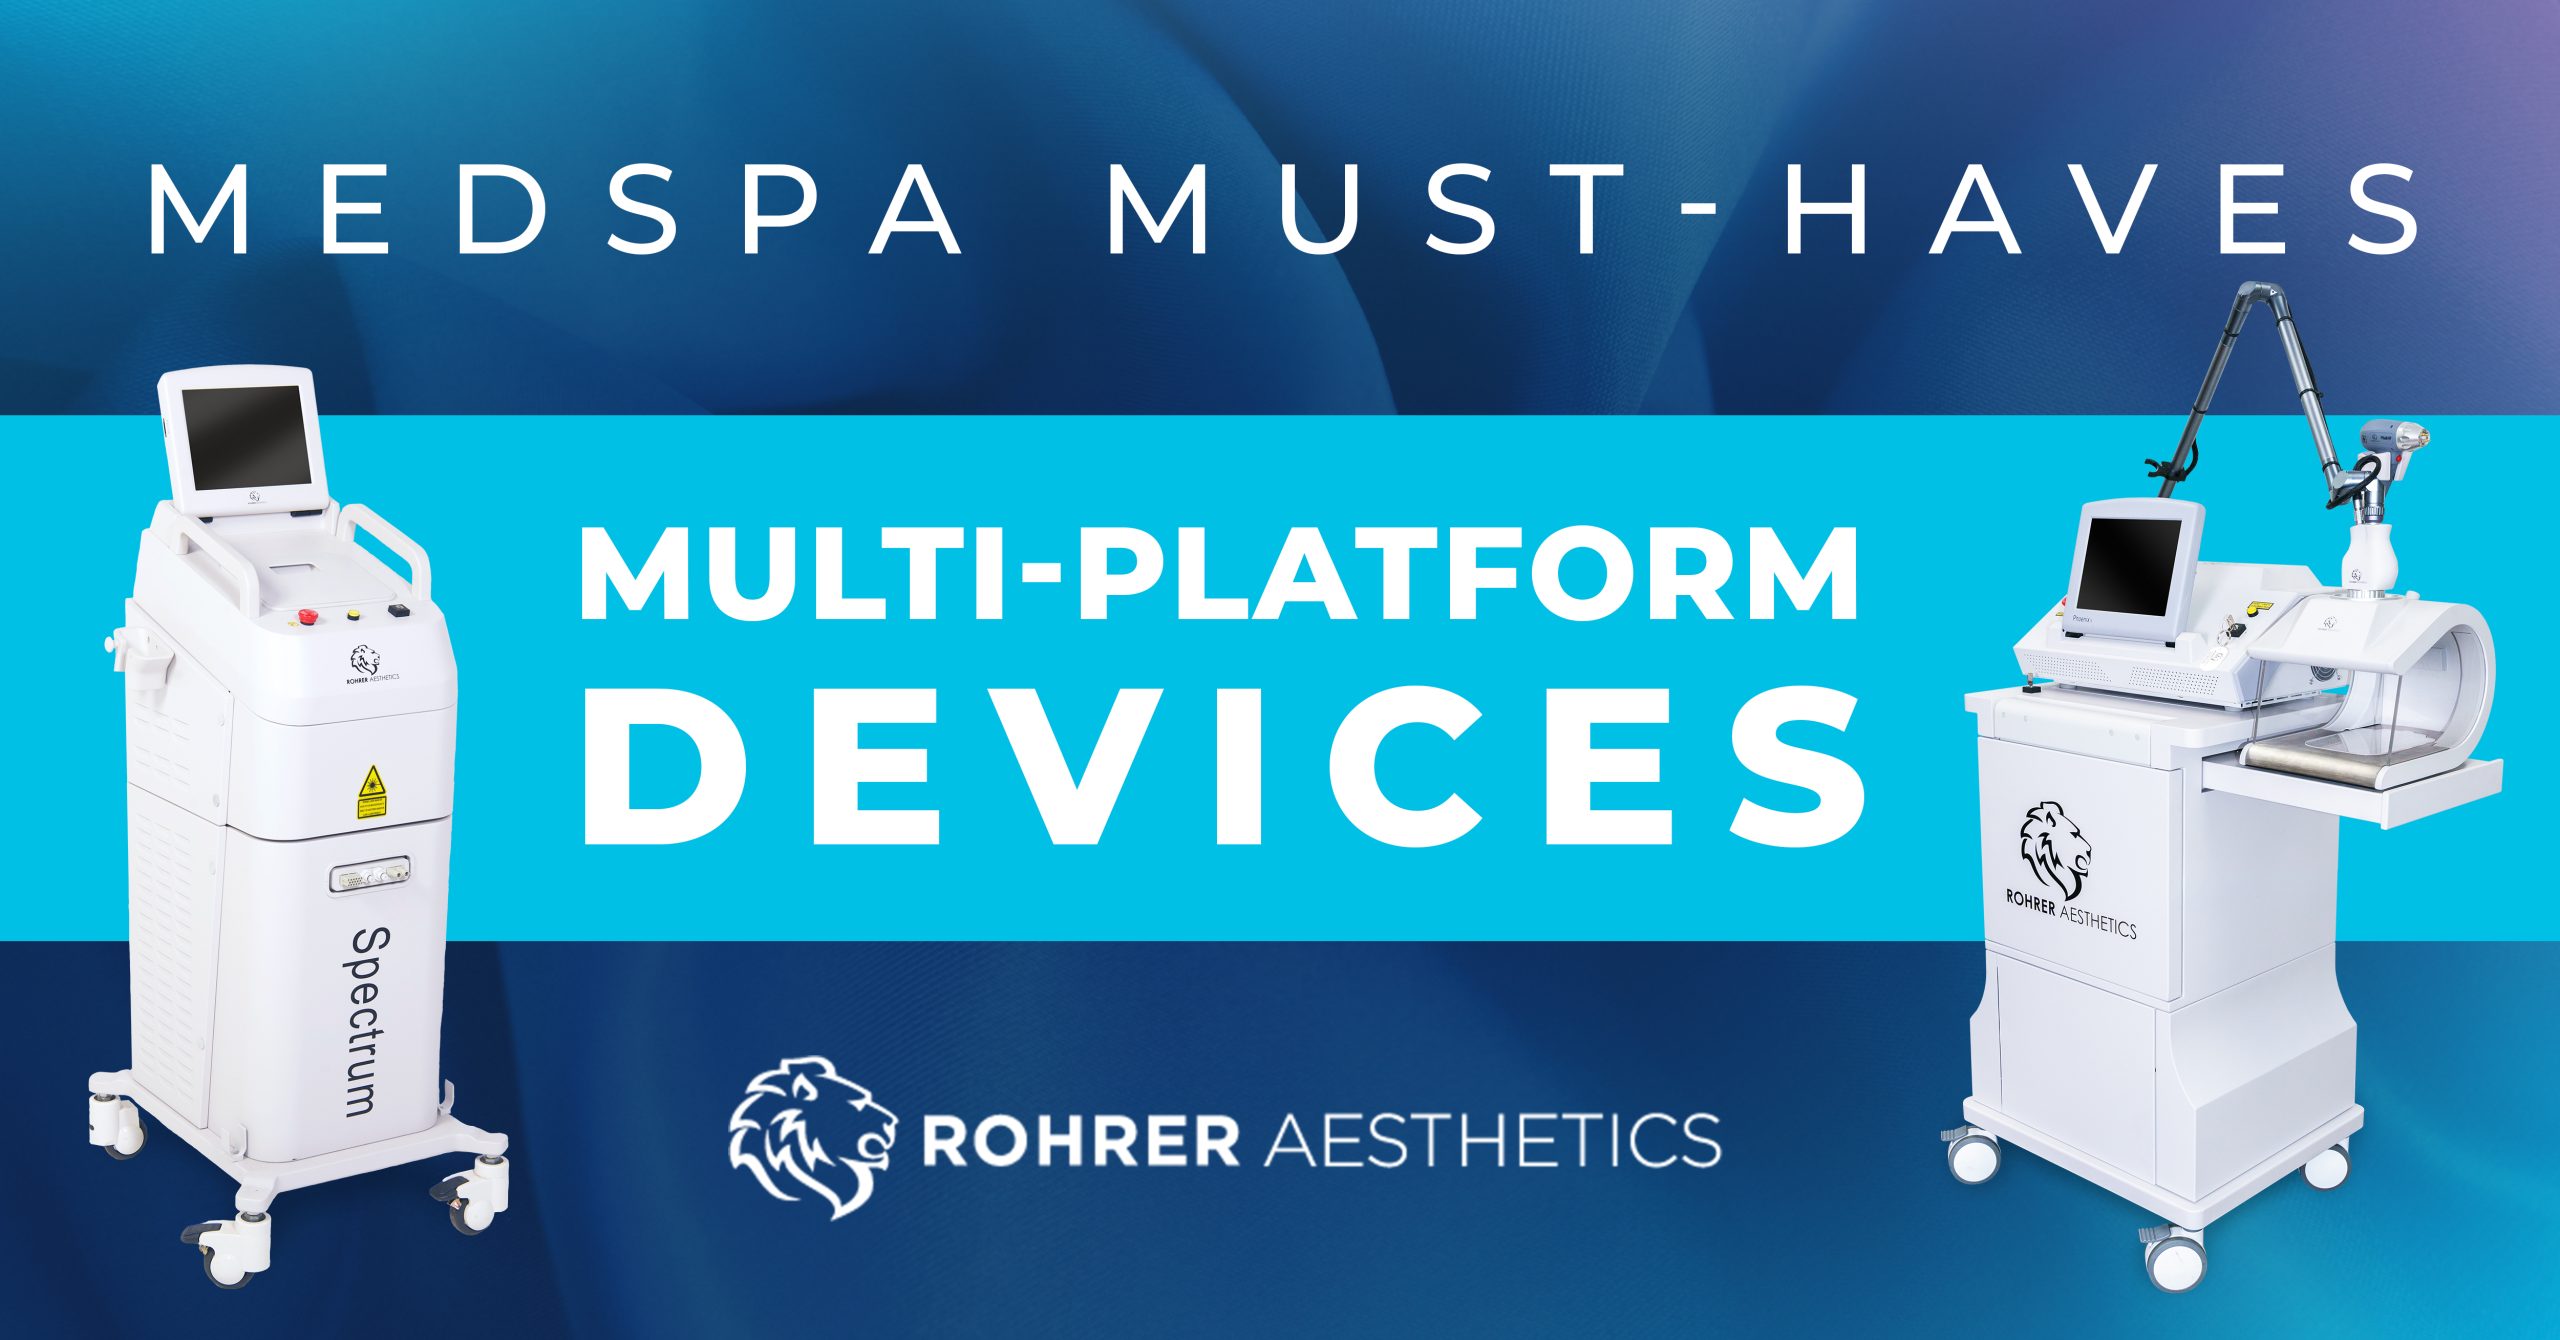 Multi-Platform Devices Are MedSpa Must-Haves